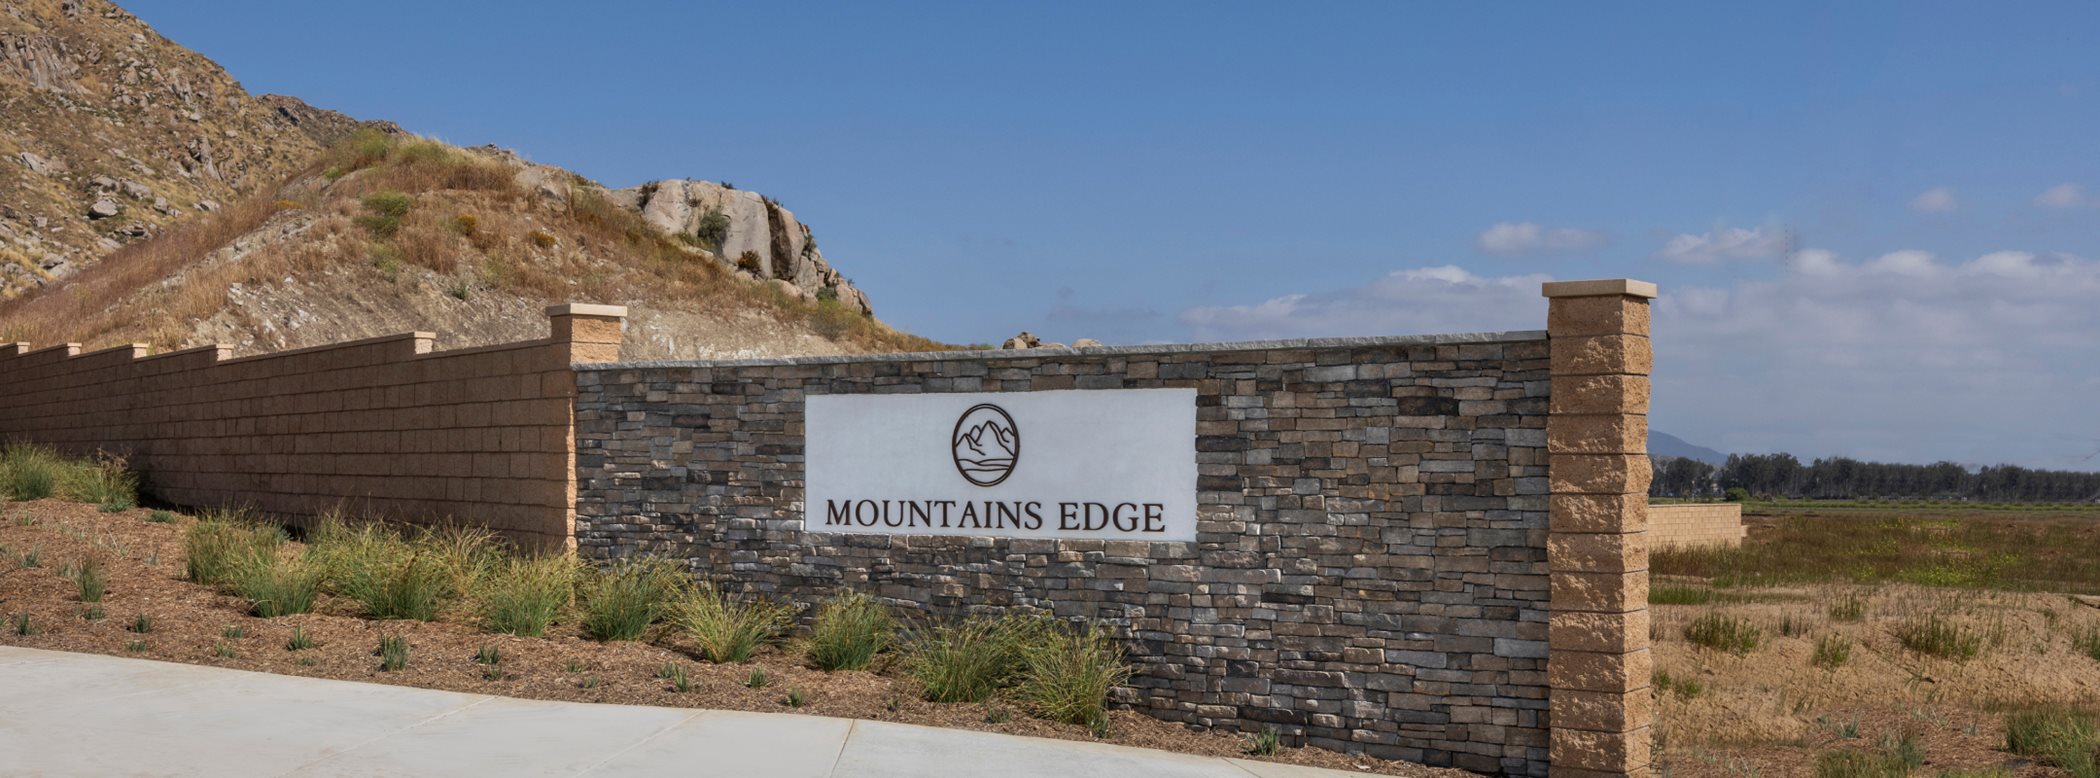 Mountains edge monument pic